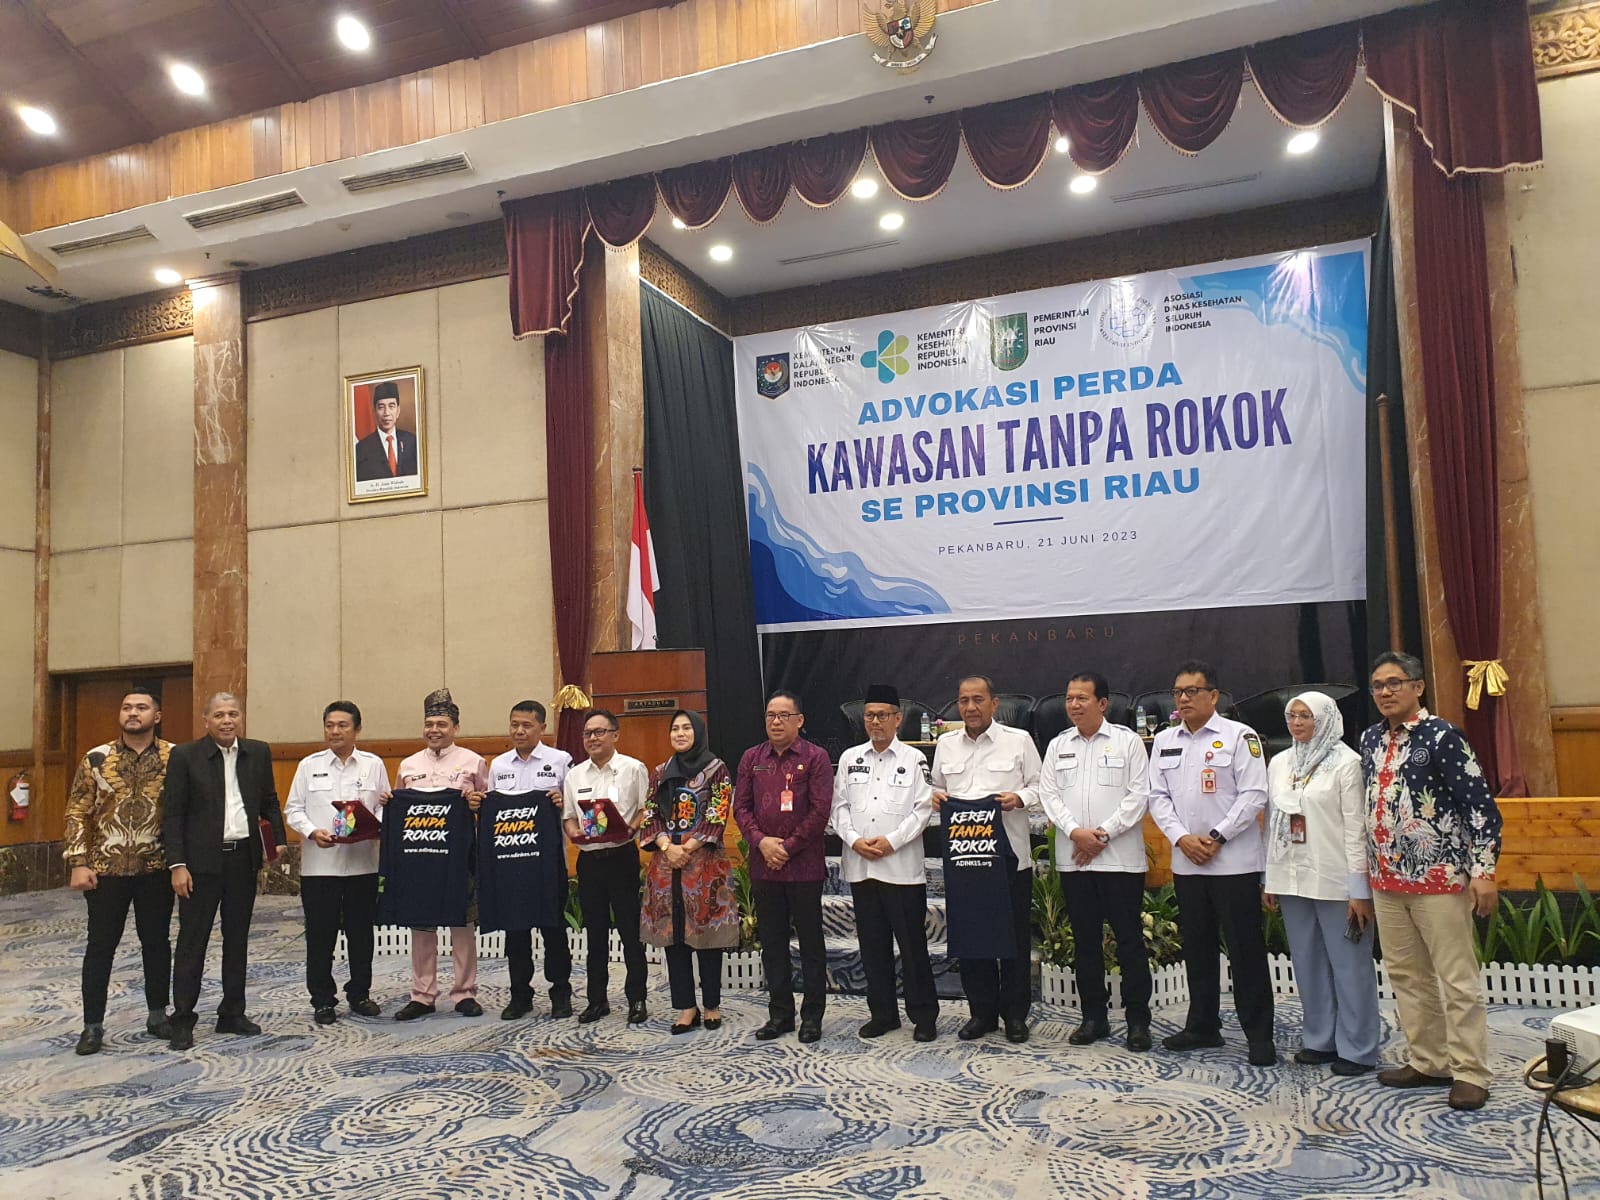 Advokasi Peraturan Daerah Kawasan Tanpa Rokok Se Provinsi Riau